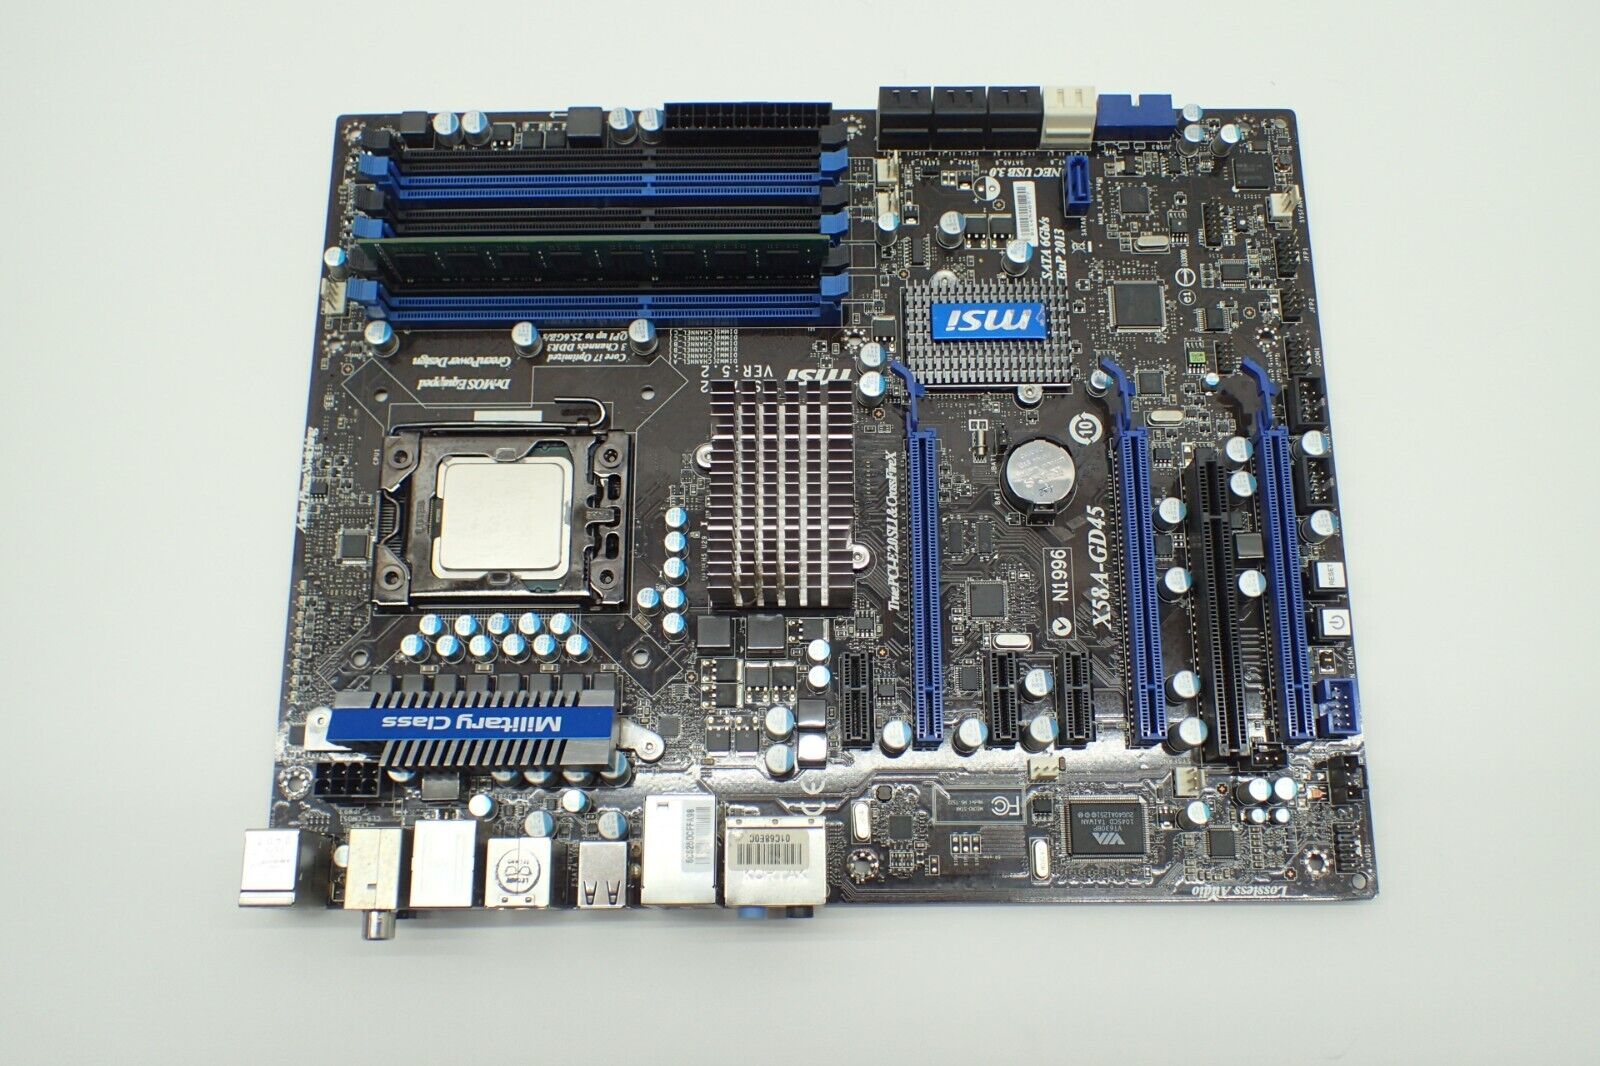 MSI X58A-GD45 LGA1366 DDR3 Intel X58 ATX Motherboard w/ i7-920 CPU 4GB RAM